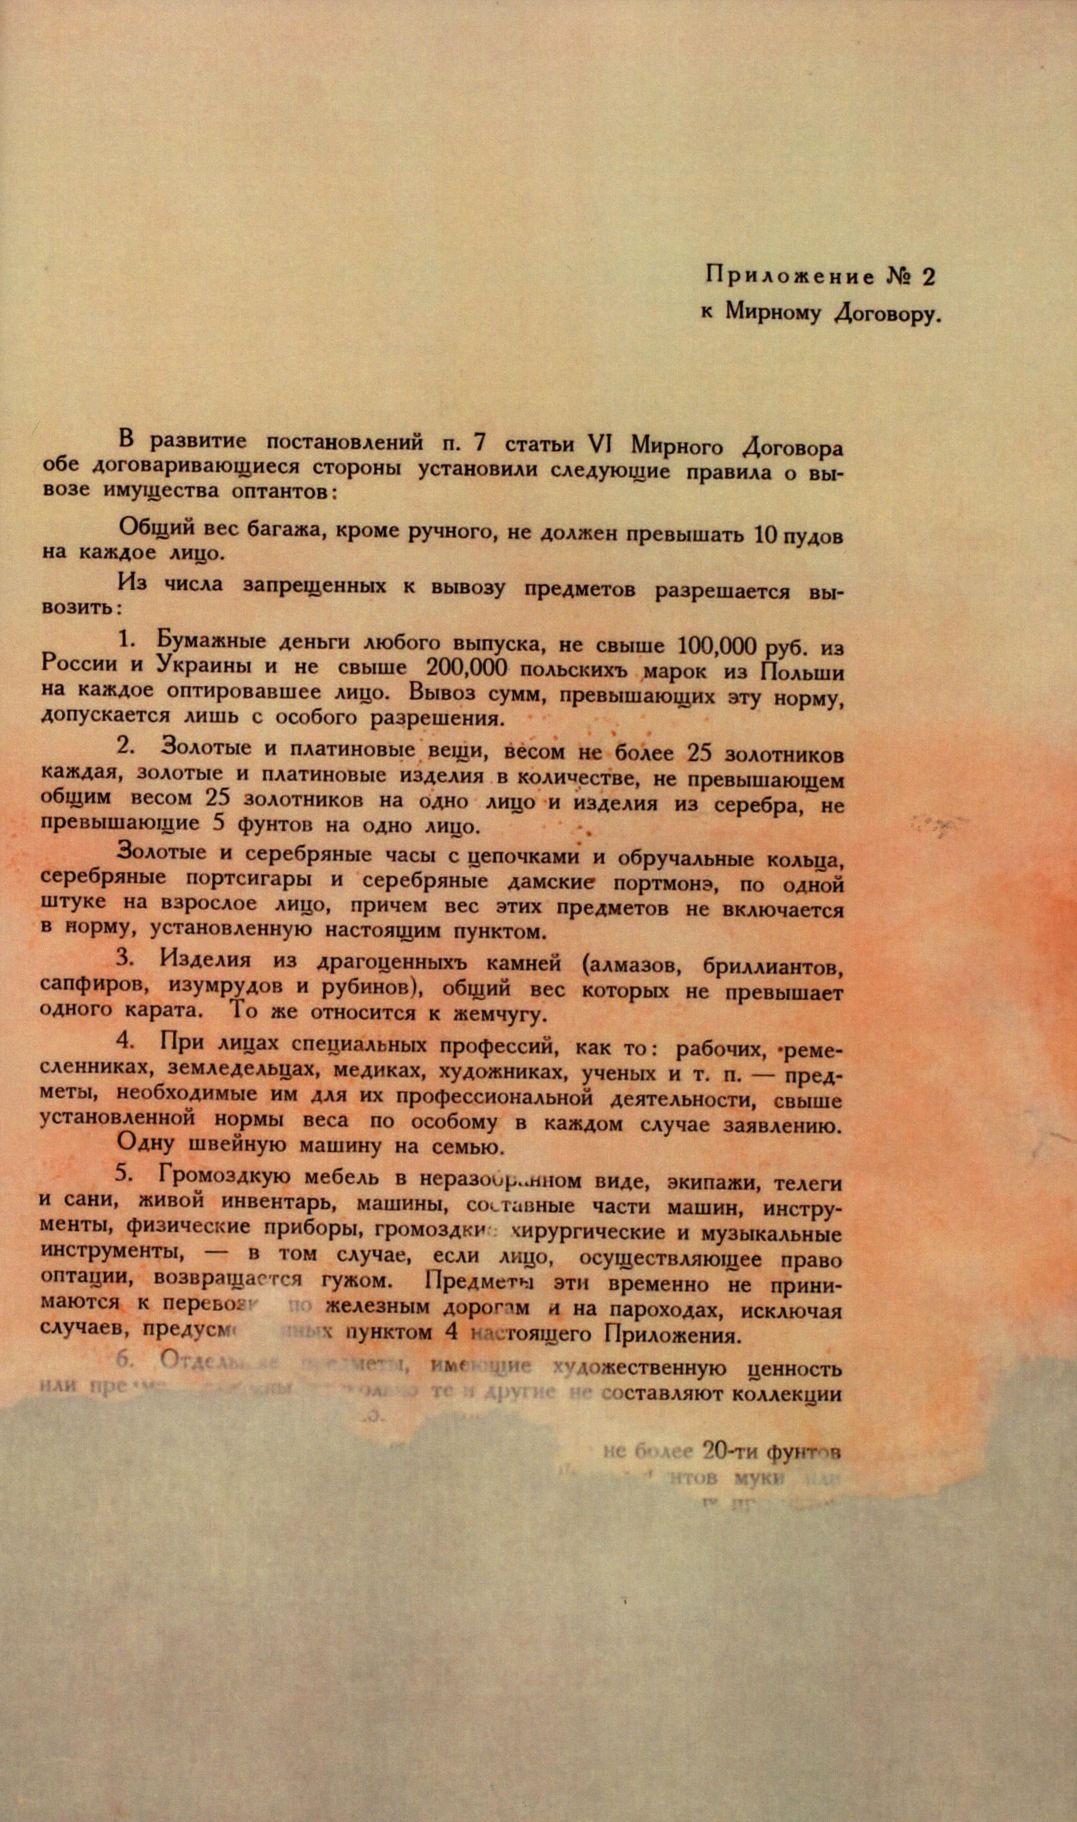 Traktat Pokoju między Polską a Rosją i Ukrainą podpisany w Rydze dnia 18 marca 1921 roku, s. 88, MSZ, sygn. 6739.